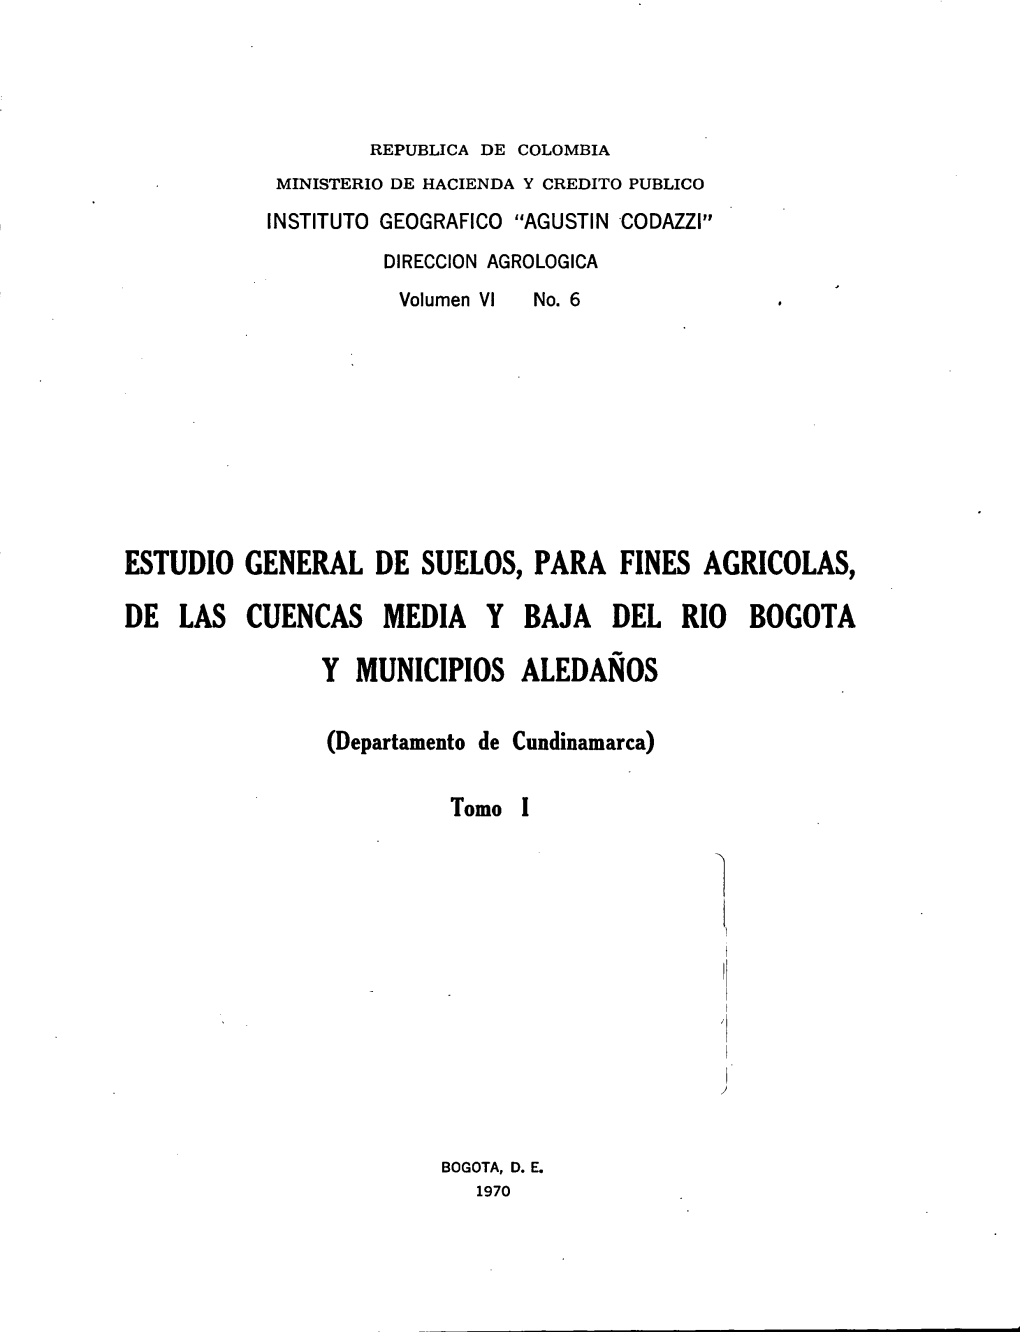 Estudio General De Suelos, Para Fines Agricolas, De Las Cuencas Media Y Baja Del Rio Bogota Y Municipios Aledanos